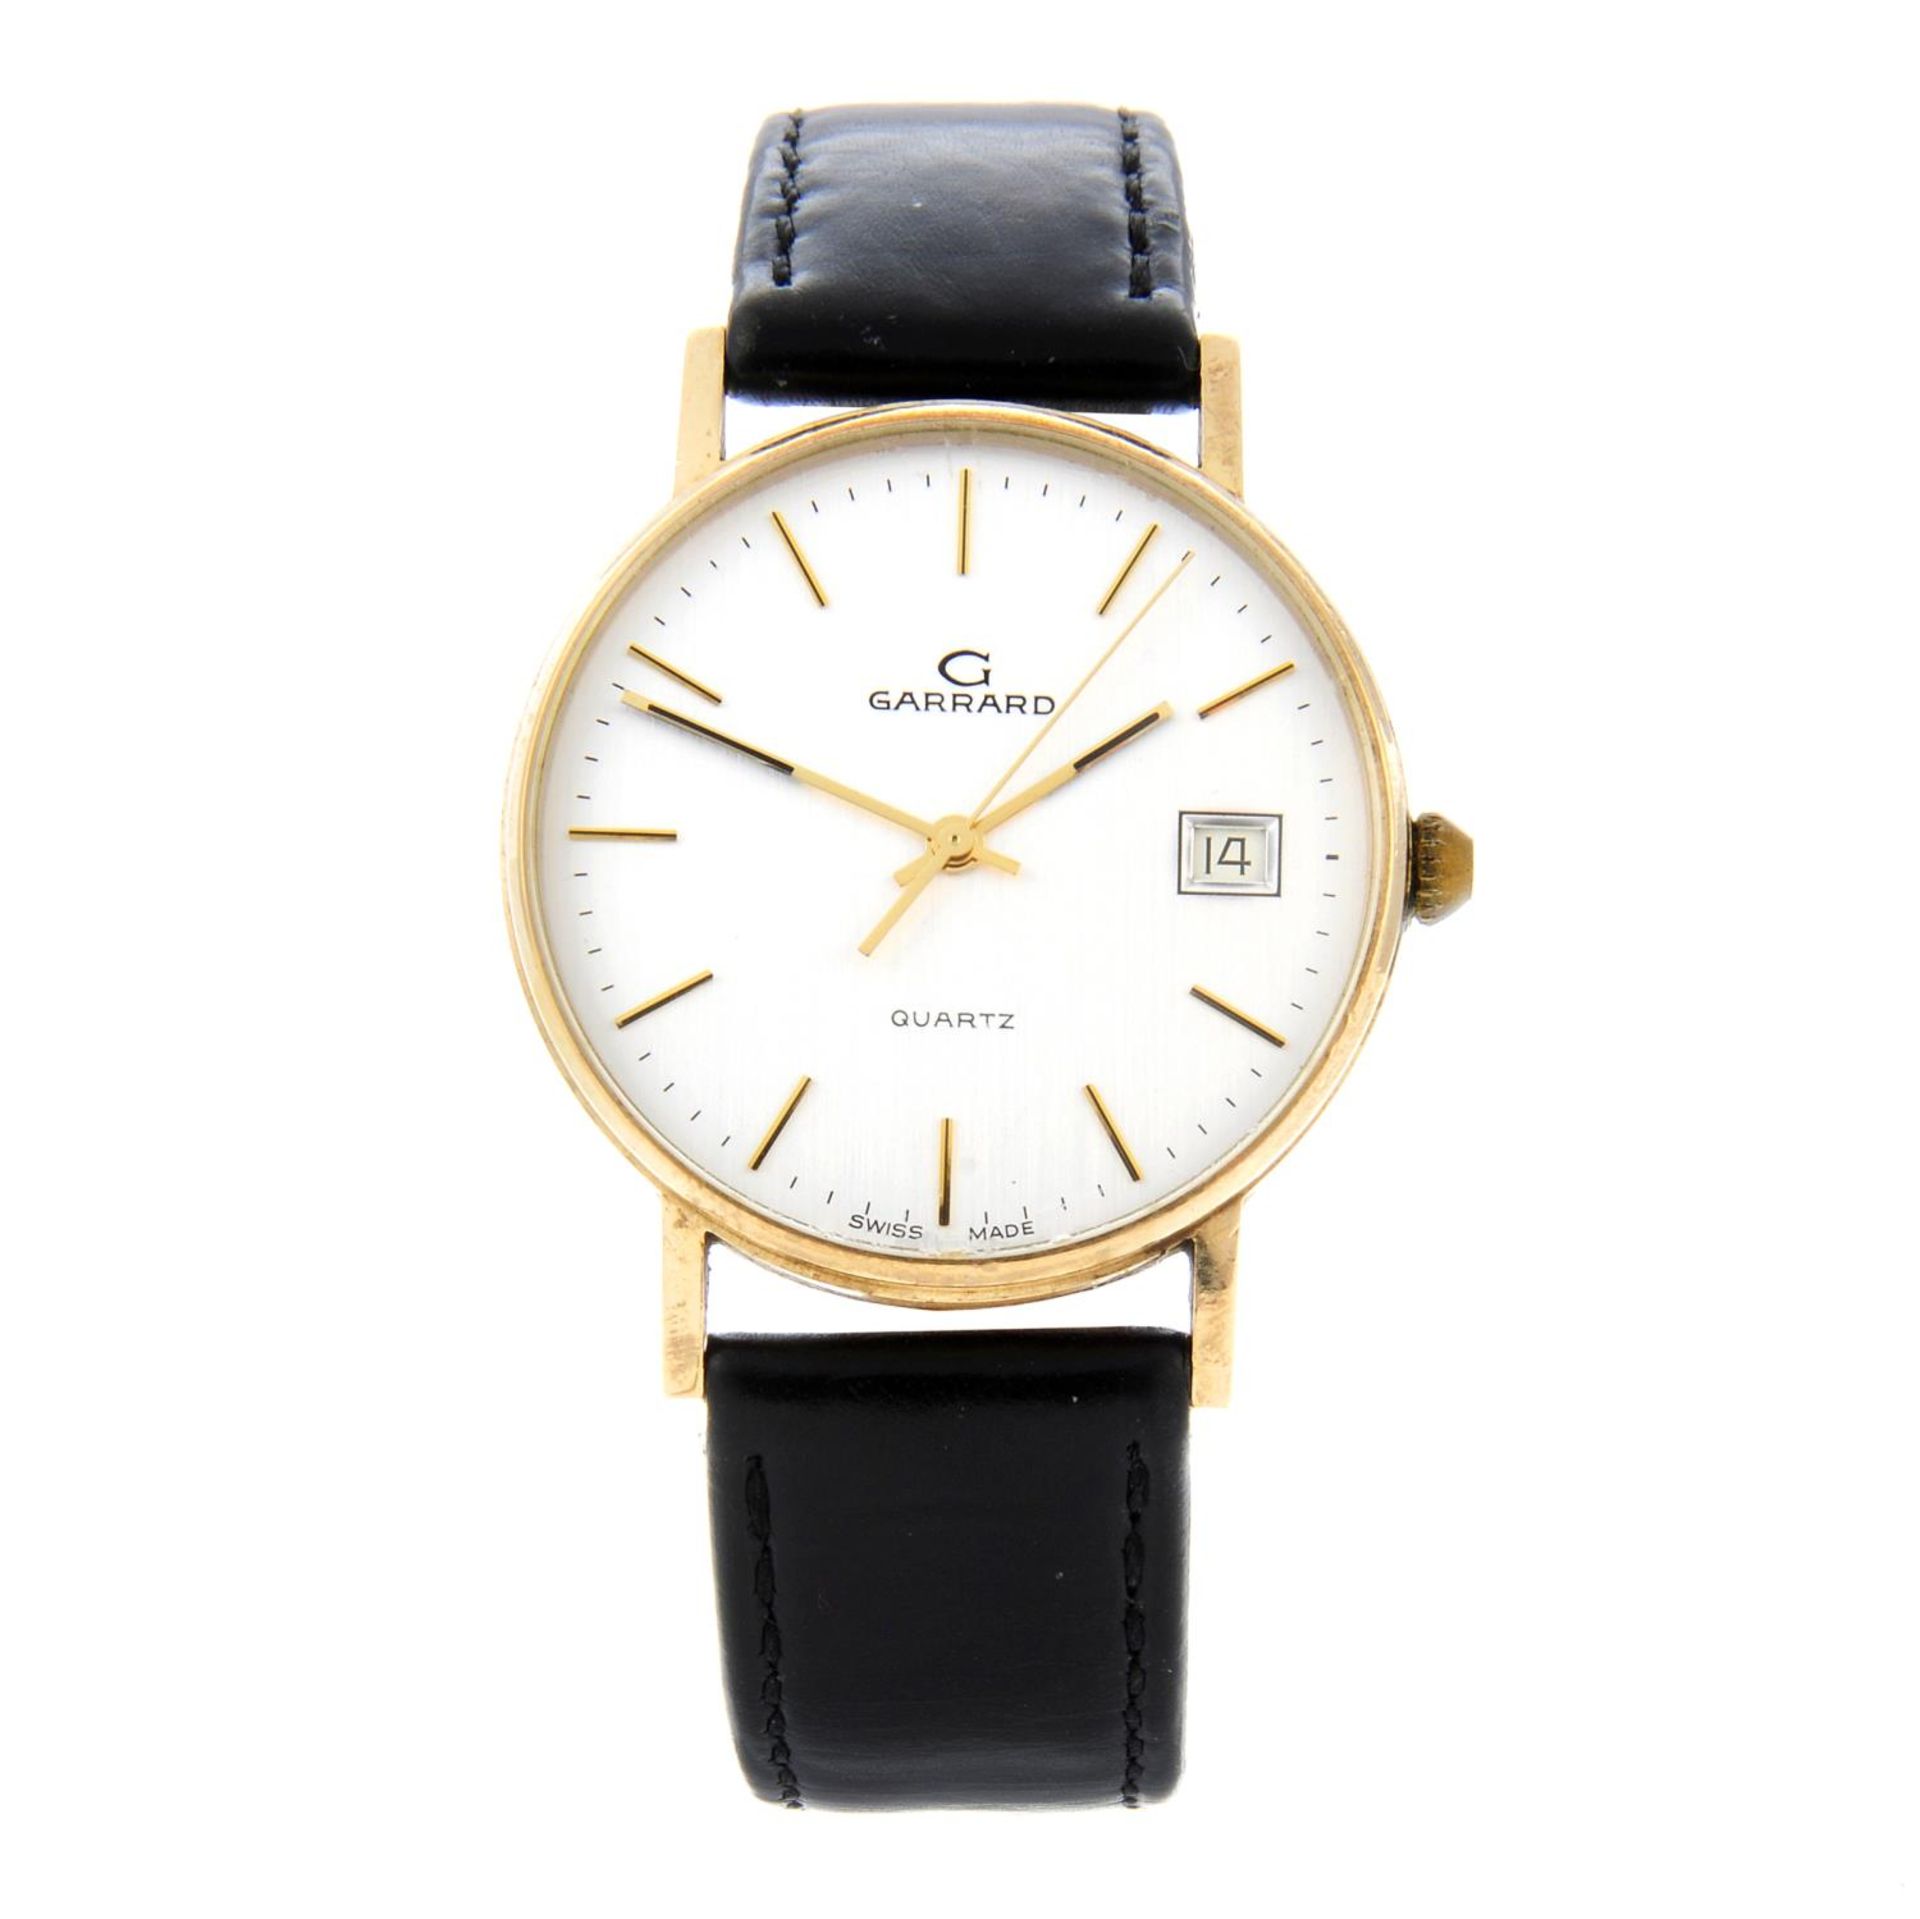 GARRARD - a gentleman's wrist watch.